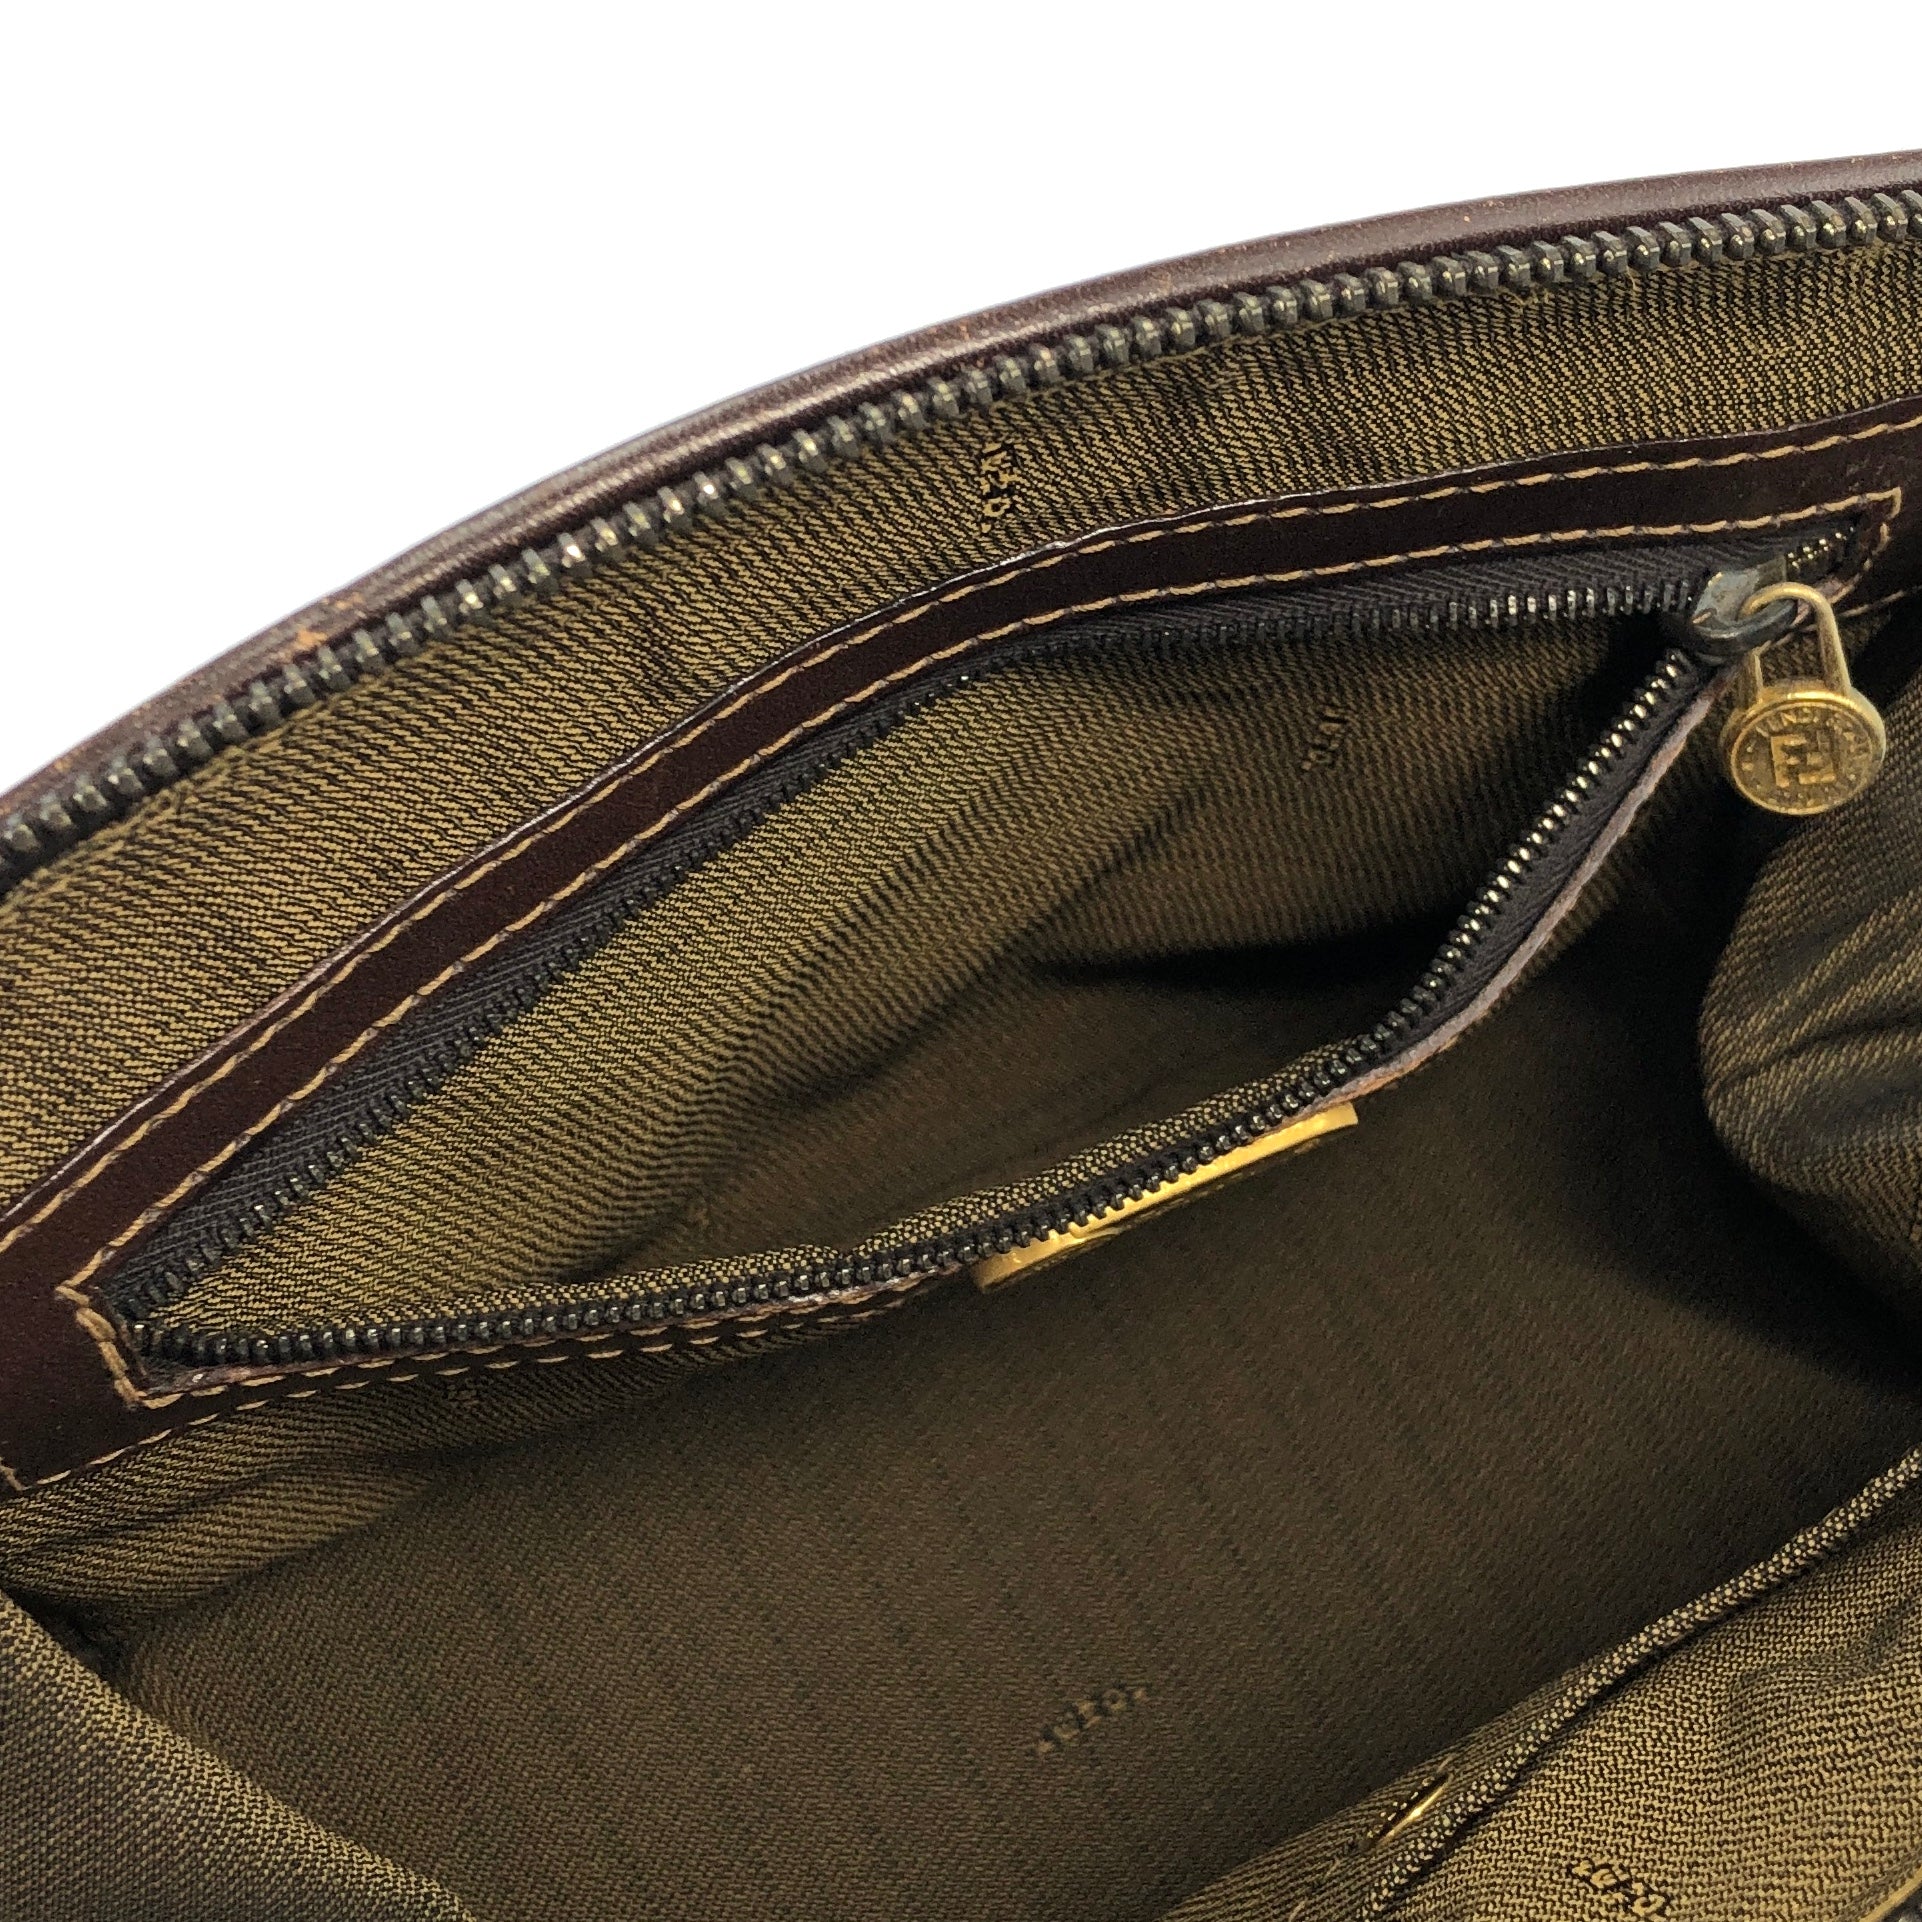 FENDI Zucca Jacquard Leather Two-way Handbag Shoulder bag Brown Vintage  n3b6d8